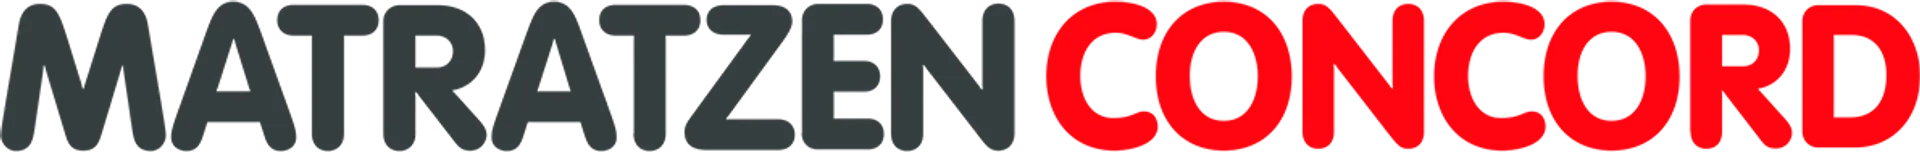 MATRATZEN CONCORD logo die aktuell Flugblatt